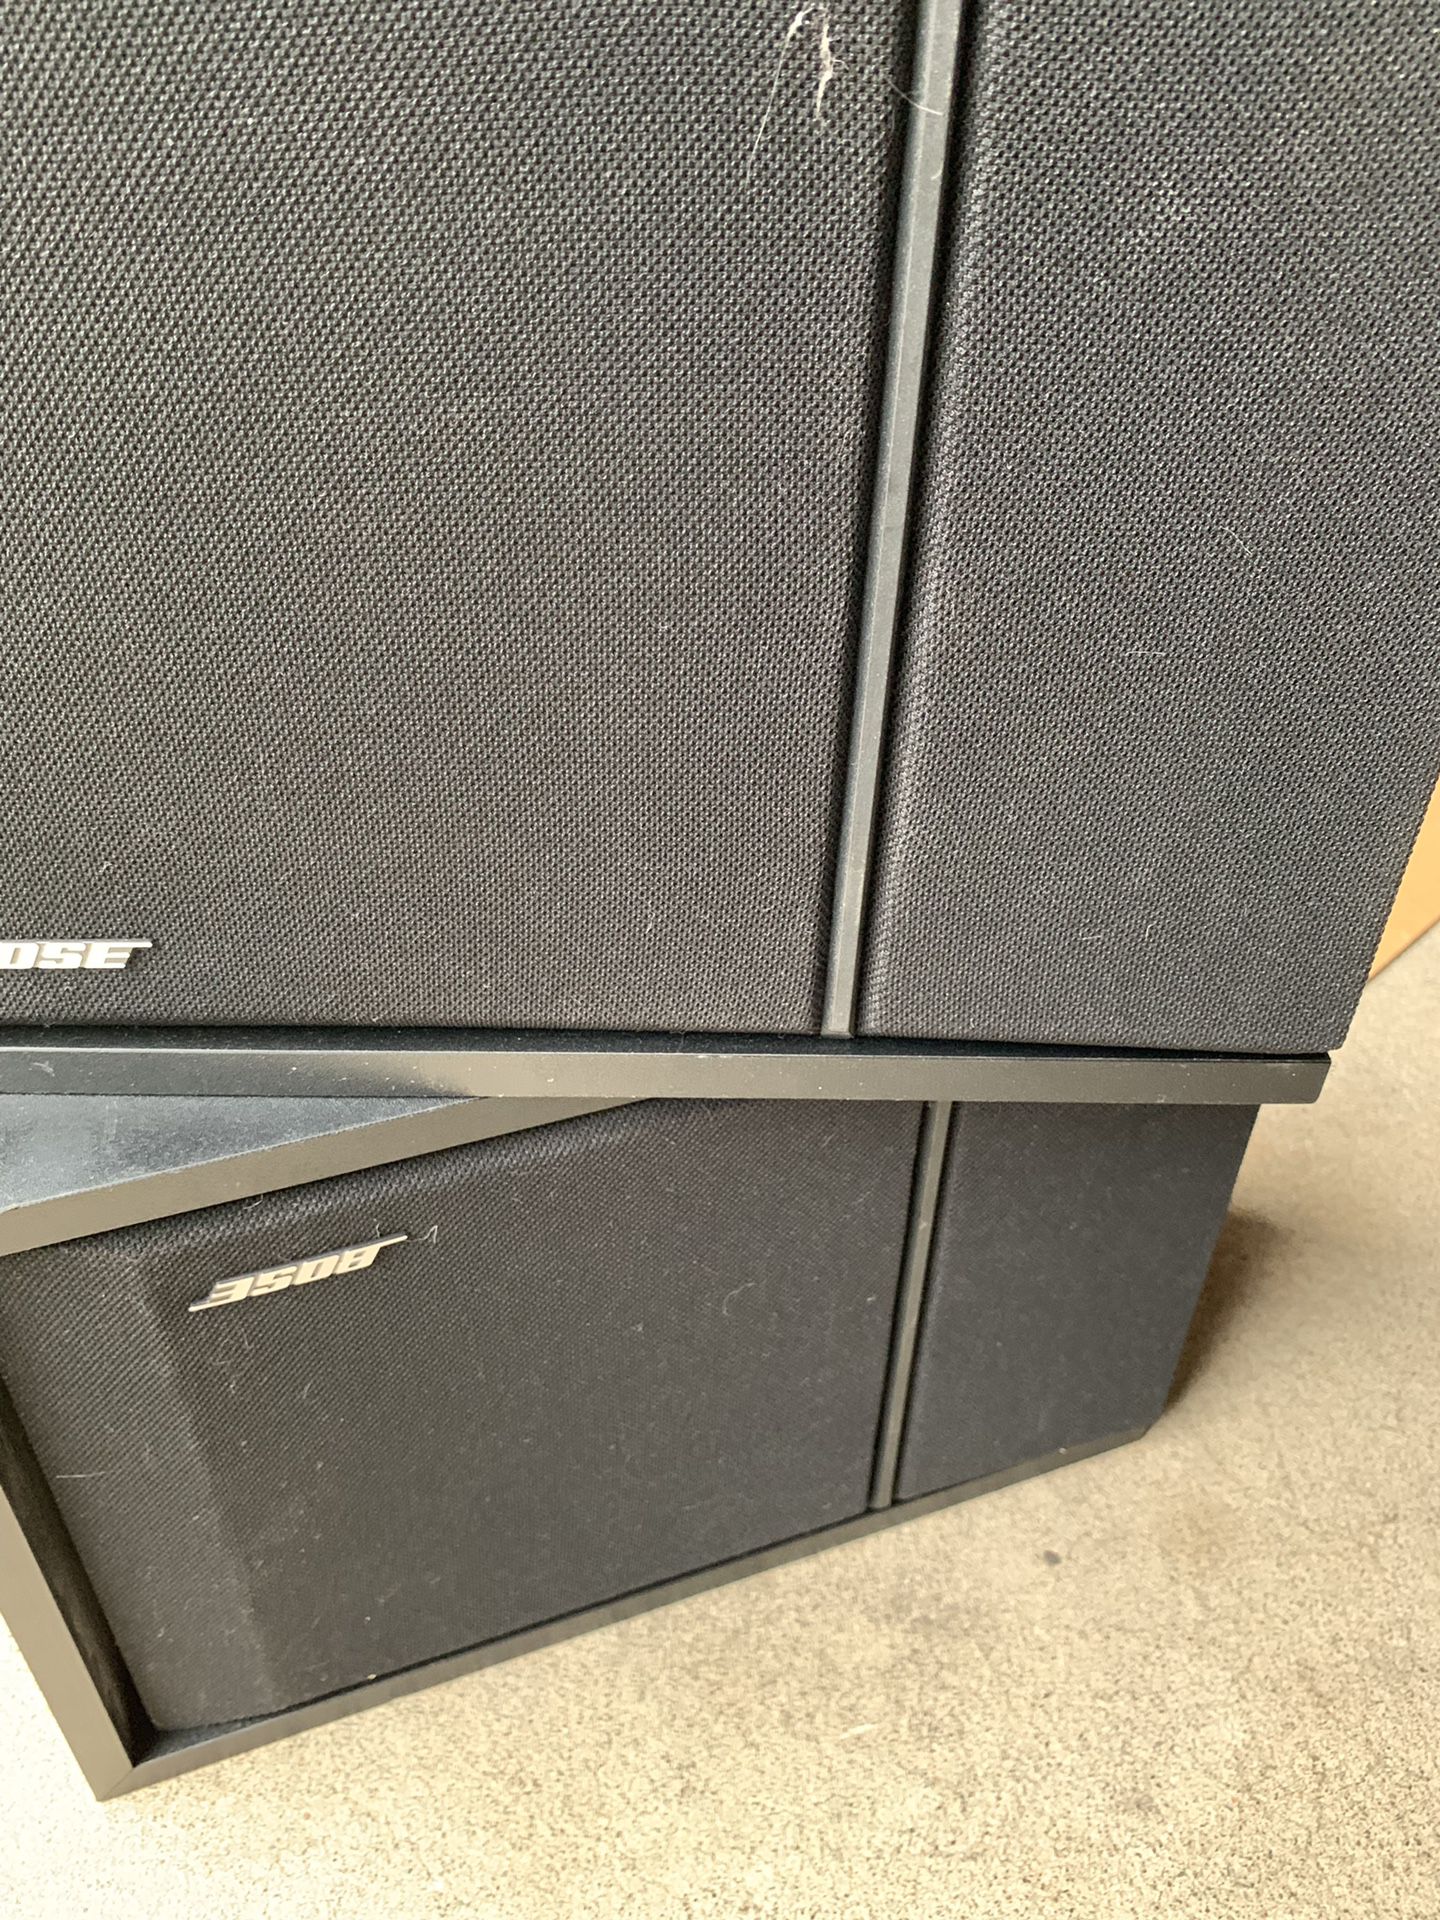 Bose 201 series 3 speakers